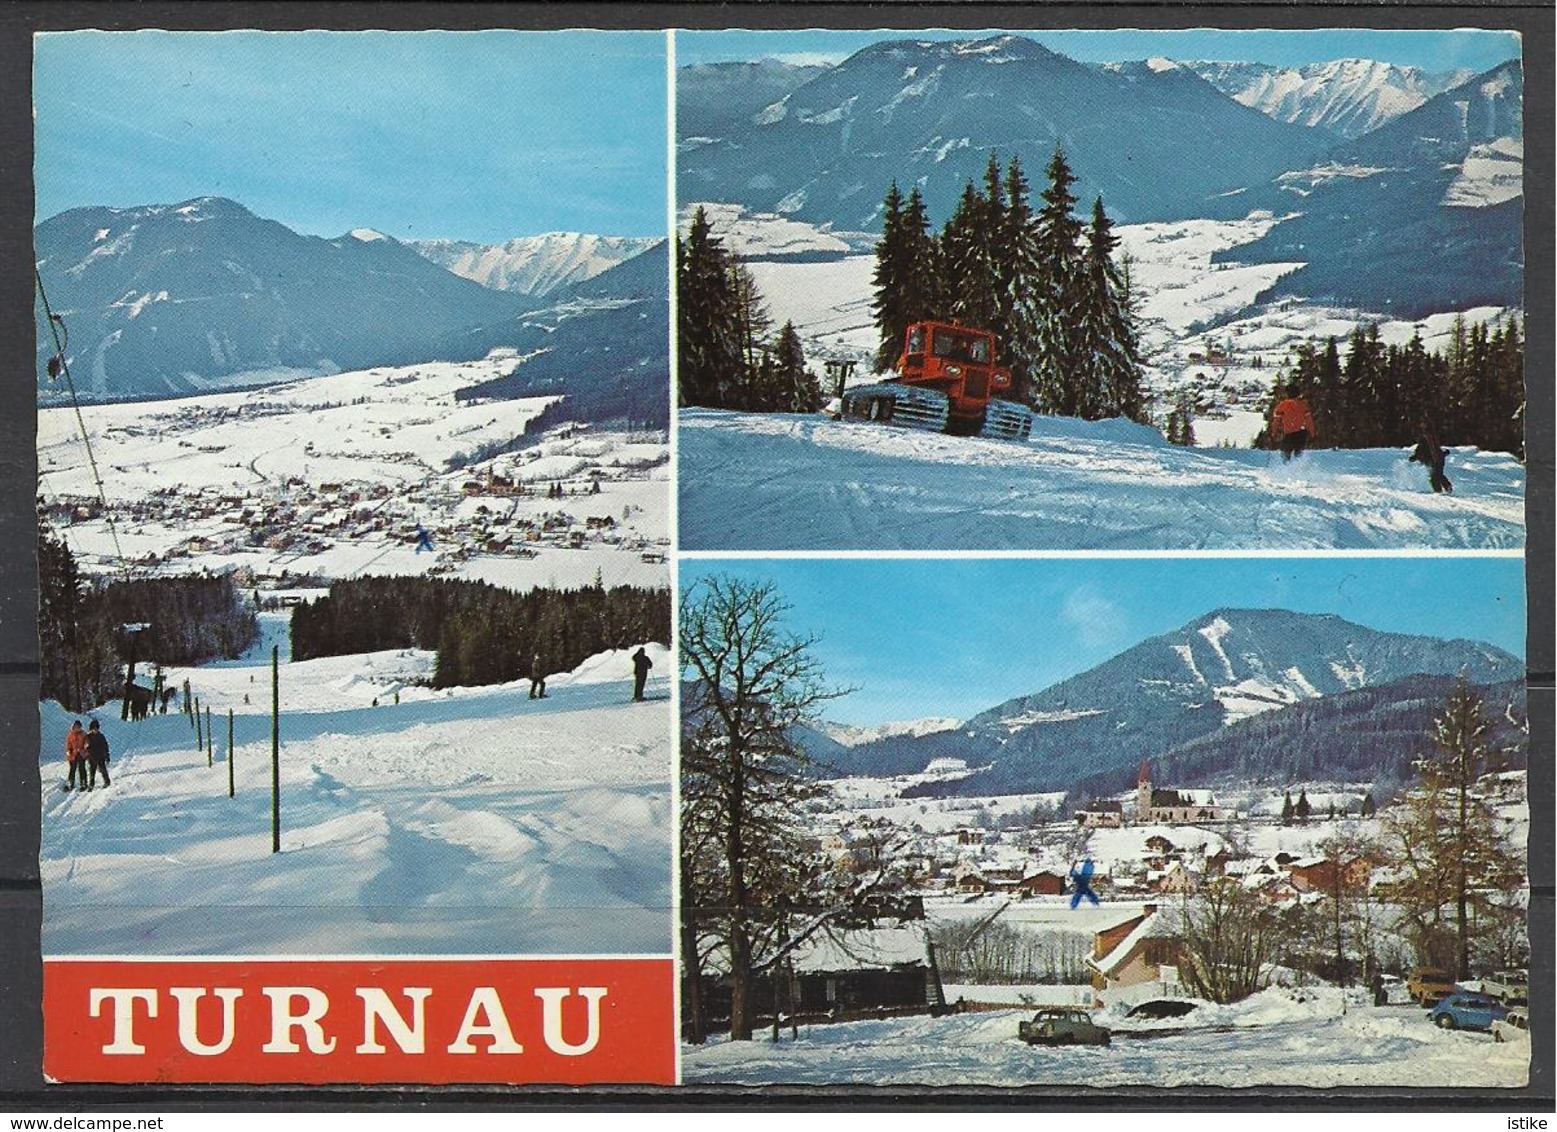 Austria, Turnau, Schilifte, Herrliche Pisten, 1978. - Mürzzuschlag